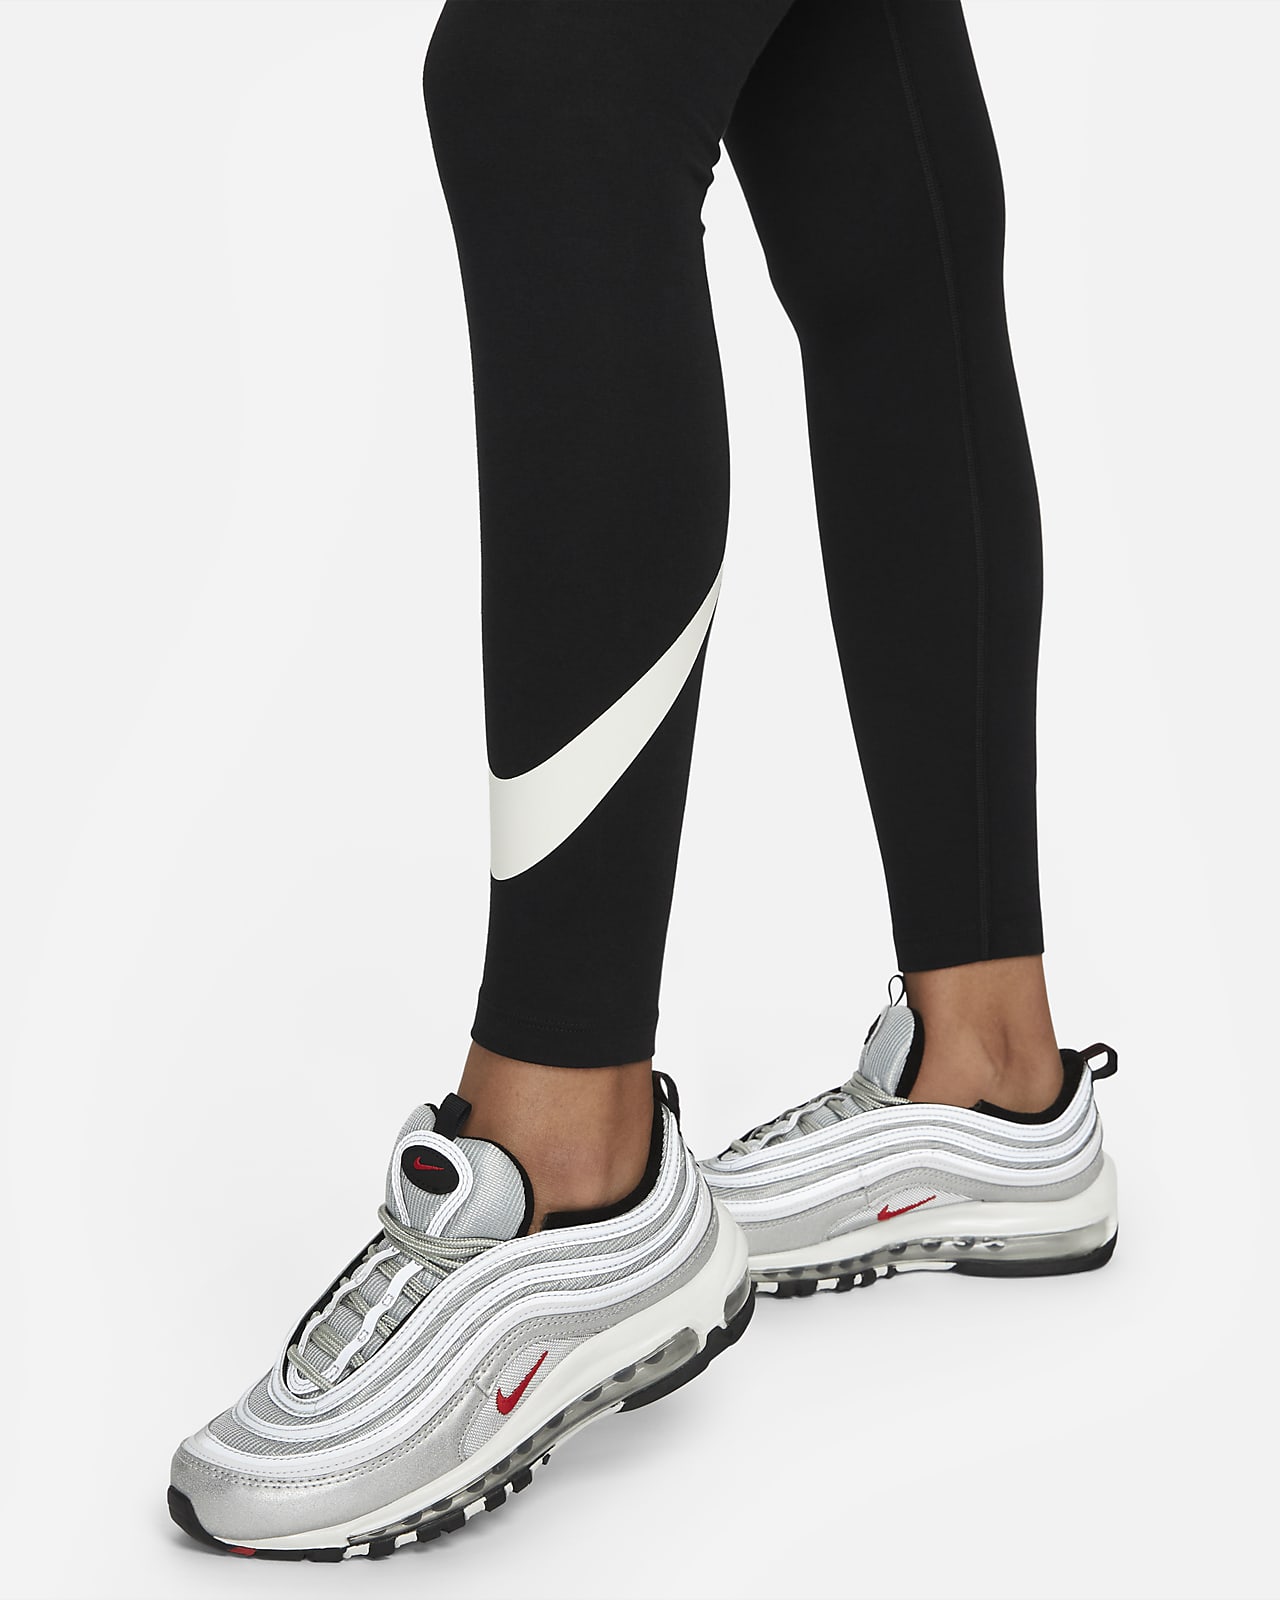 Donna a Vita Alta Pantaloni & tights. Nike IT